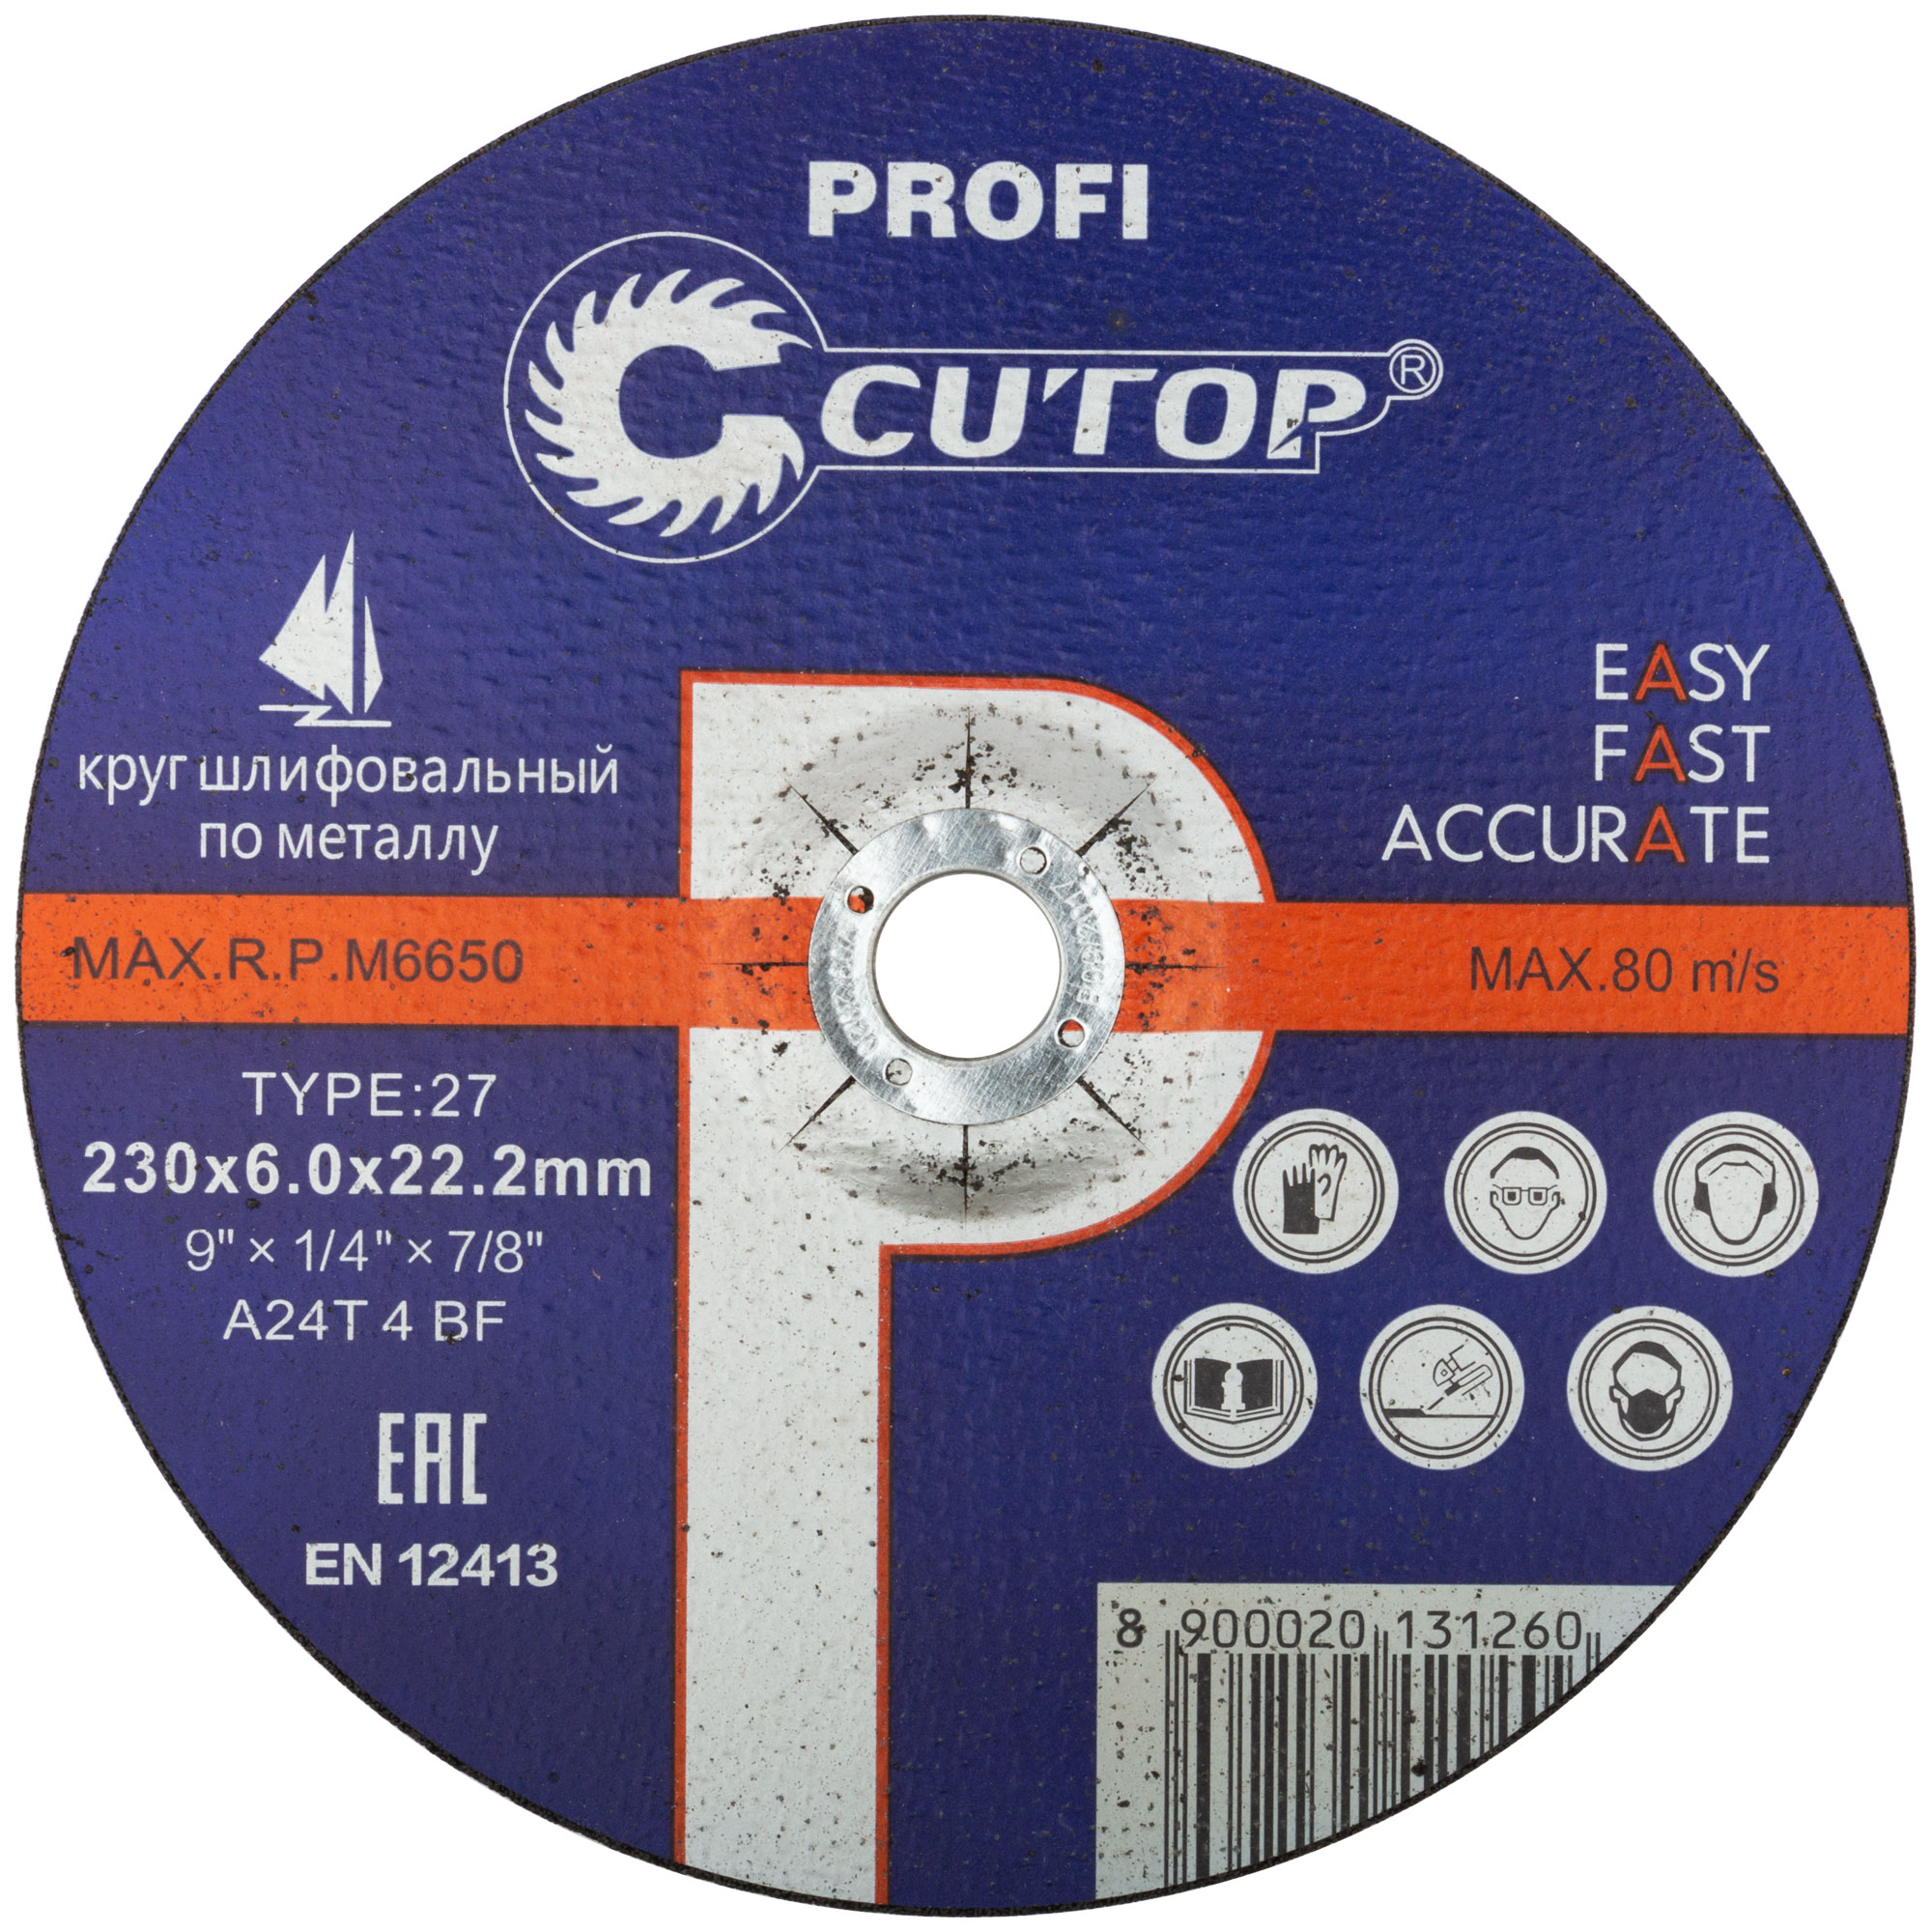 Шлифовальный диск по металлу Cutop Profi Т27-230 х 6,0 х 22 39995т